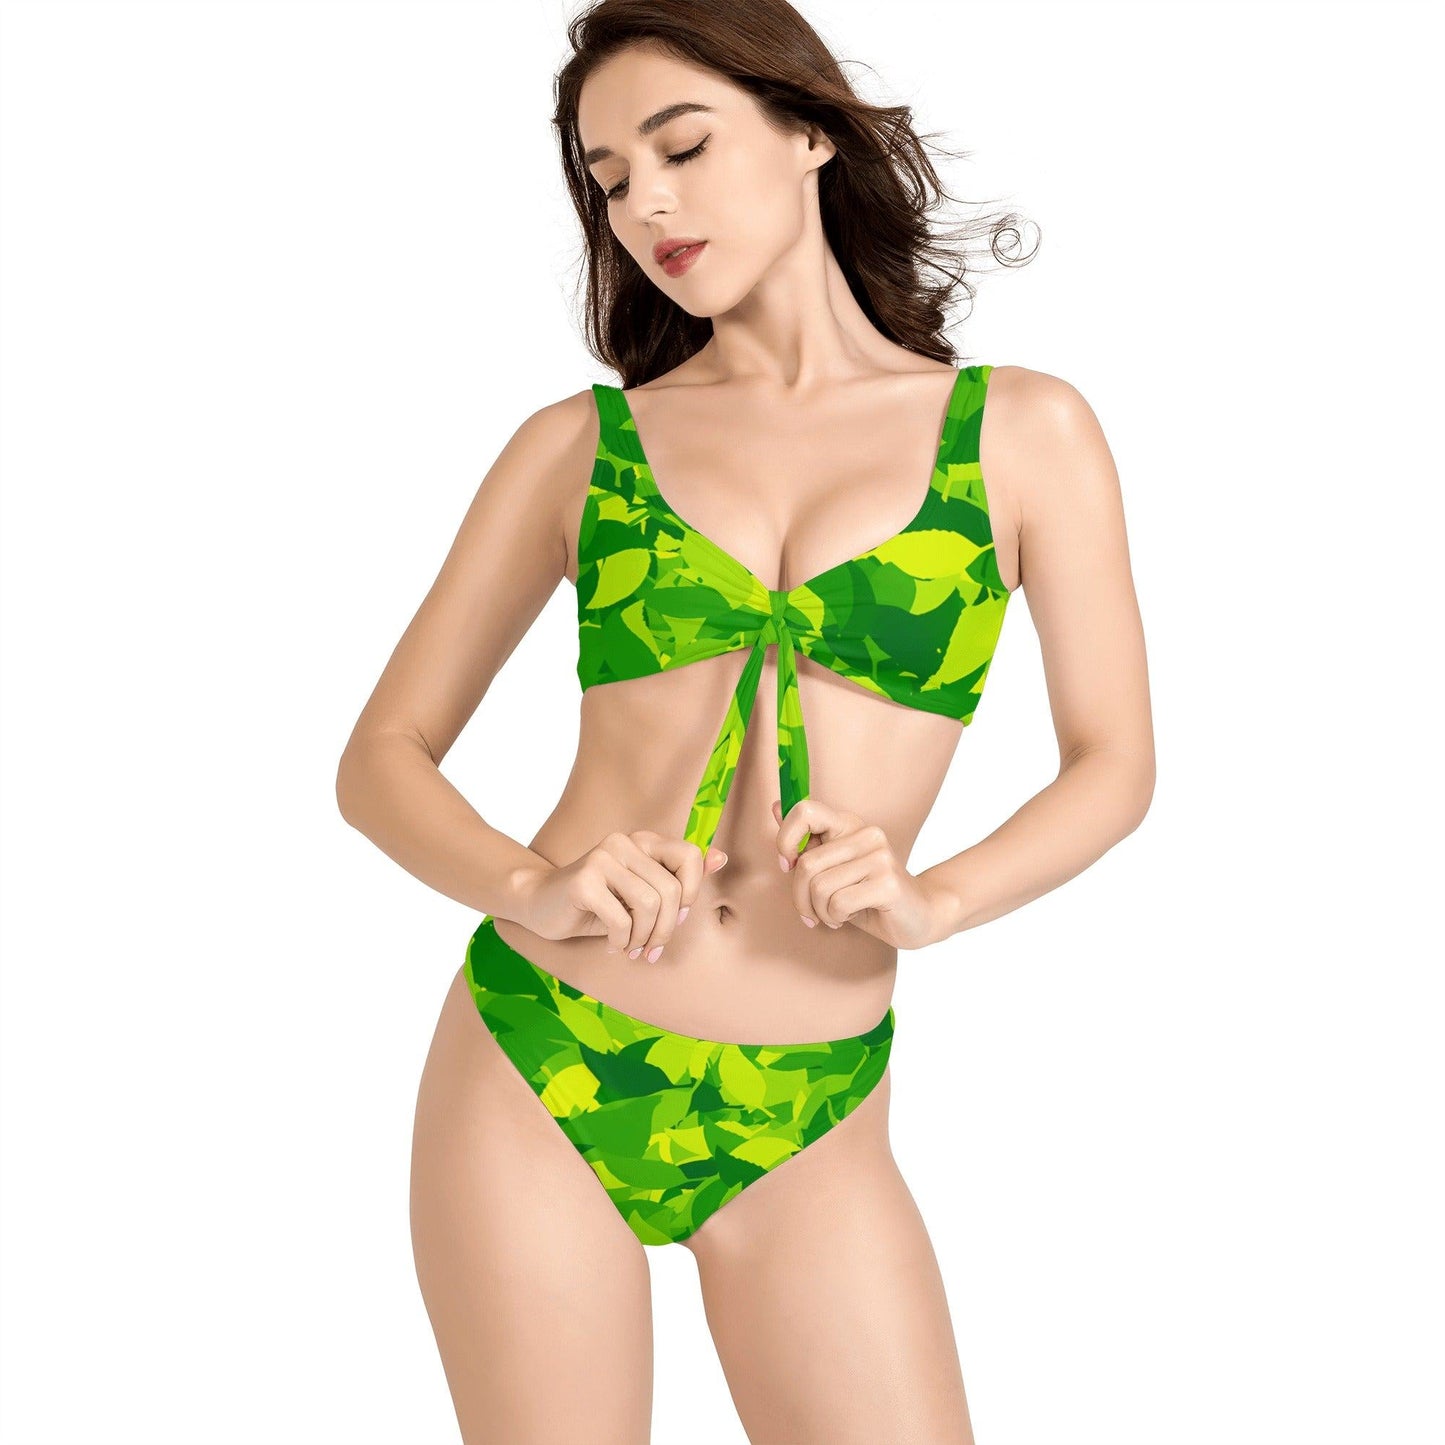 Green Leaf Bikini Badeanzug mit Schleife Bikini mit Schleife 57.99 Bikini, Green, Leaf, Schleife JLR Design